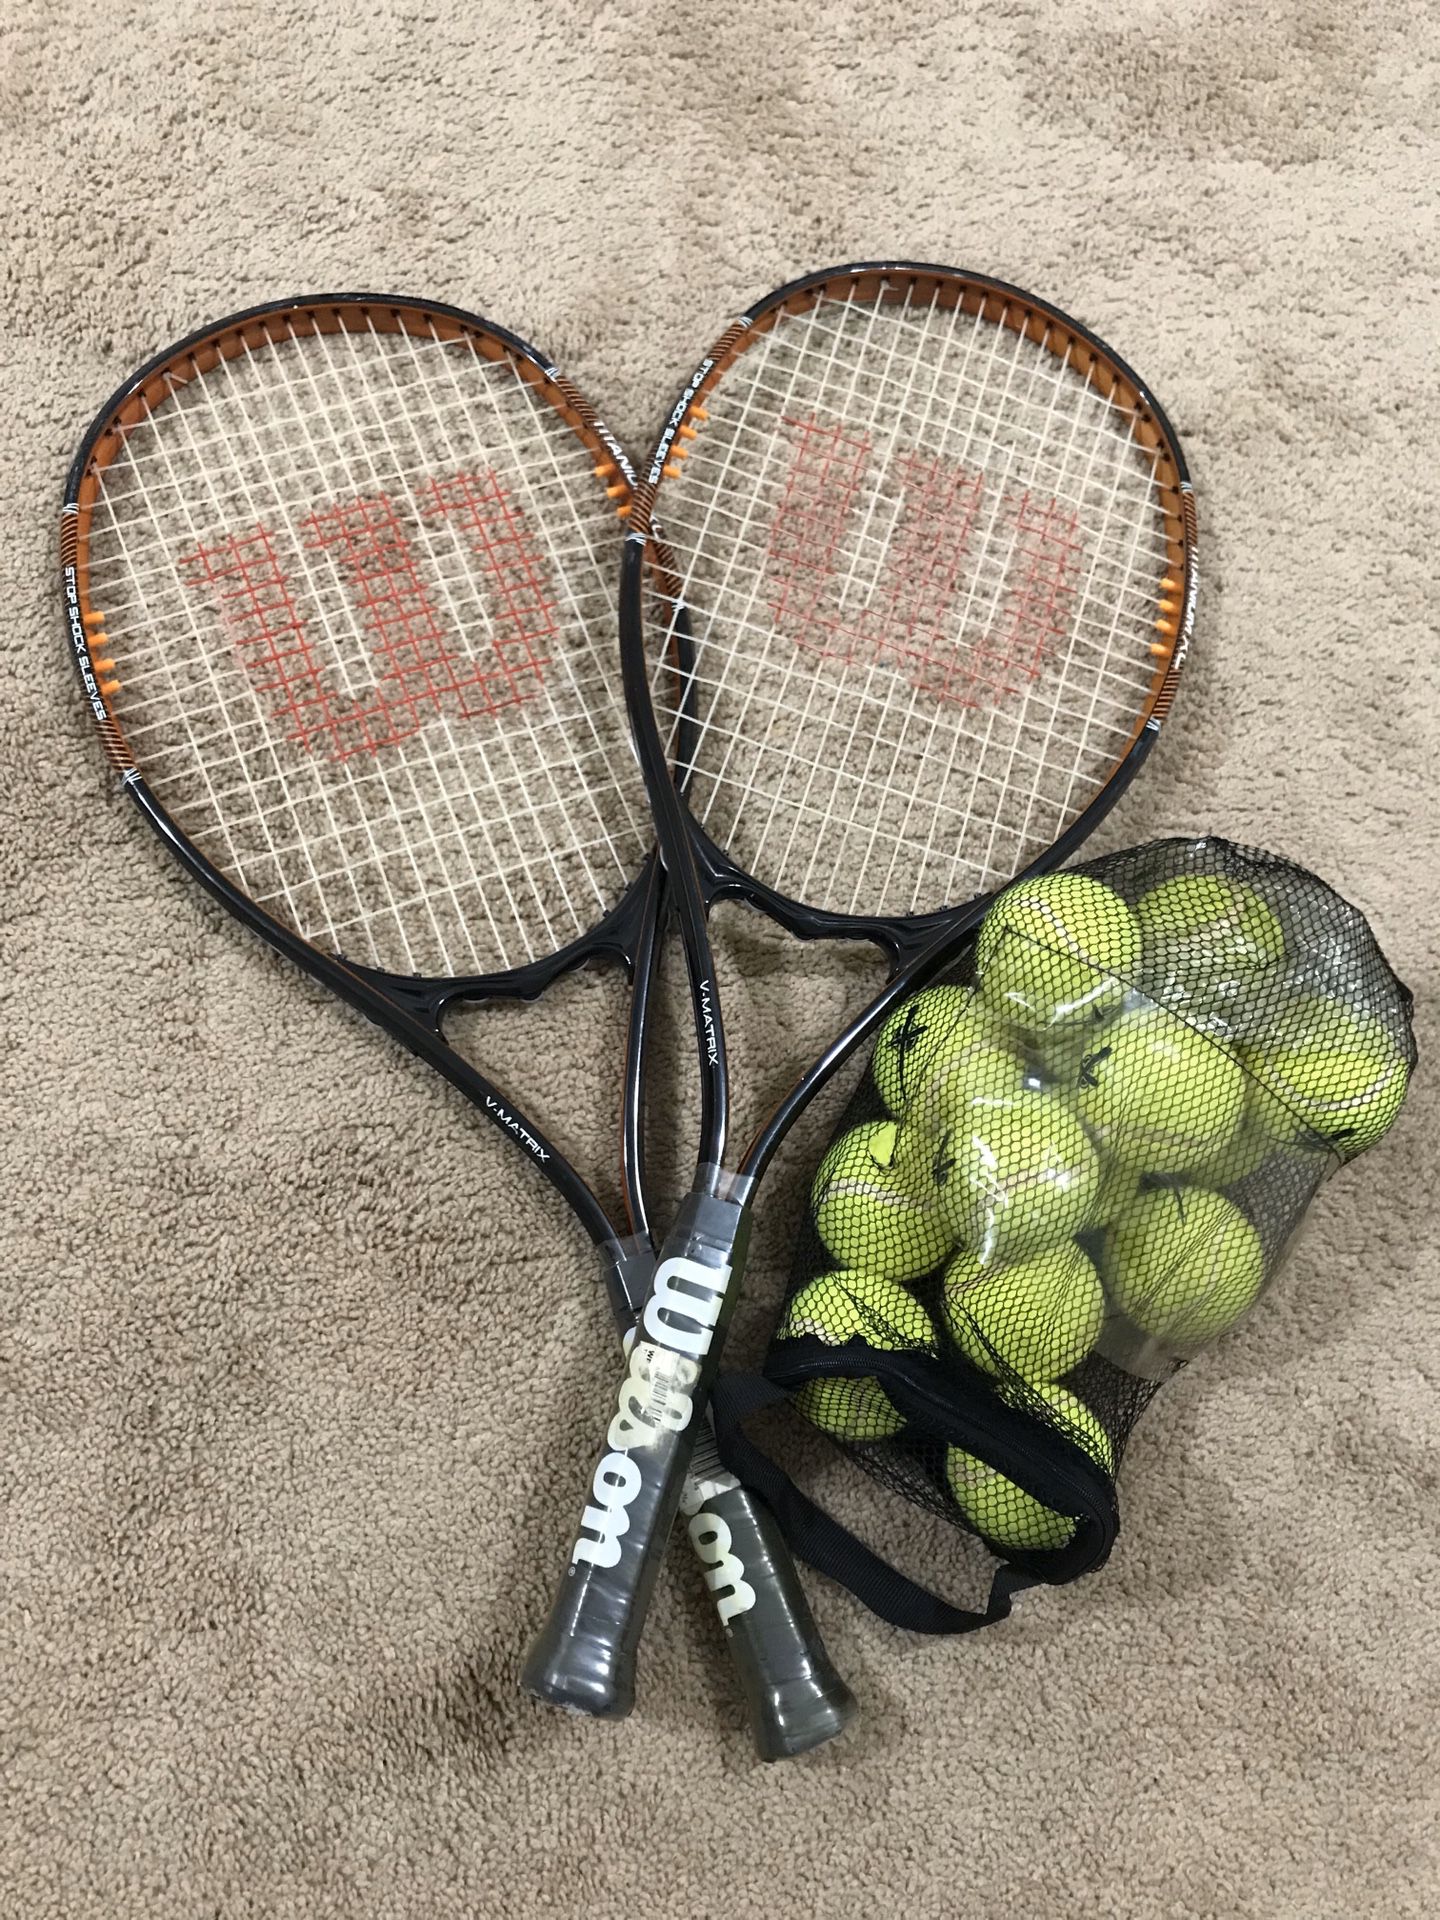 Tennis Racket - Tennis Rackets - Tennis Racquet